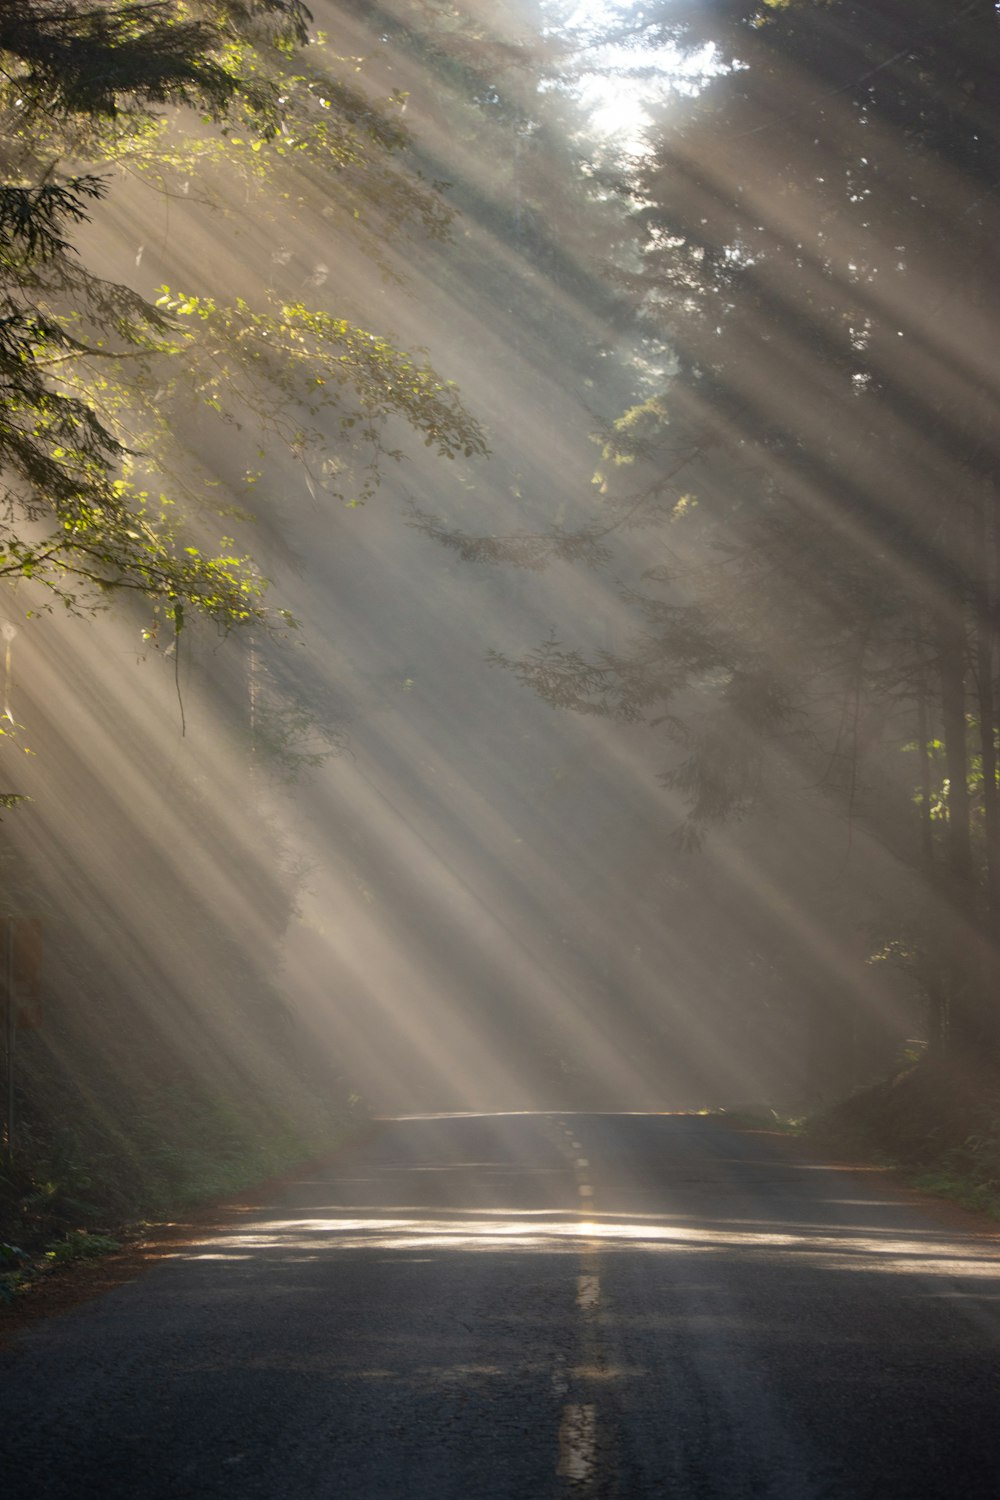 O sol brilha através das árvores em uma estrada